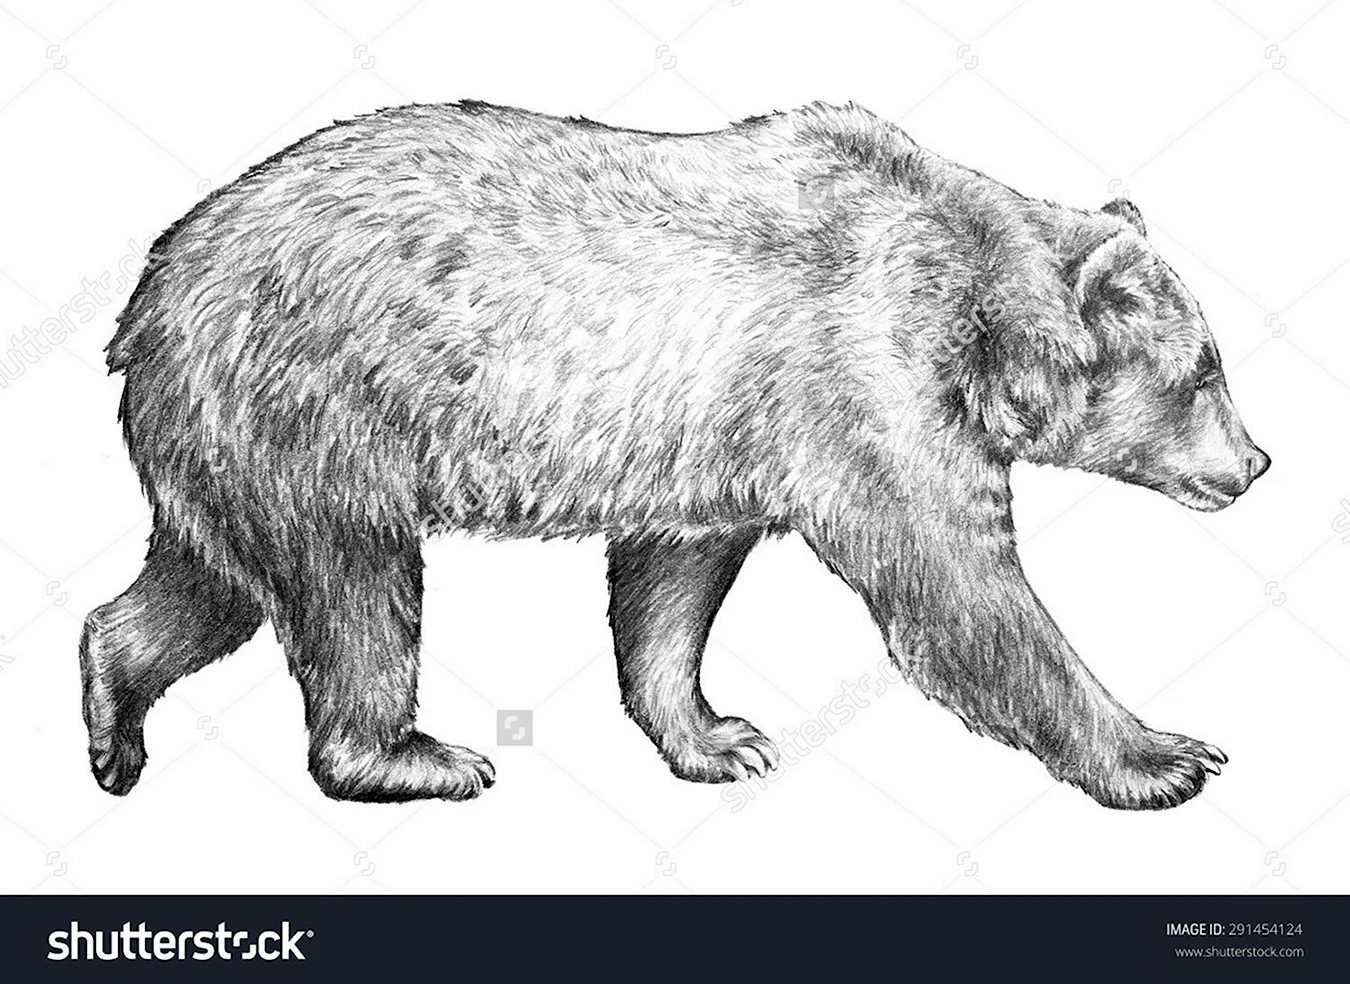 Медведь карандашом вид сбоку. Для срисовки